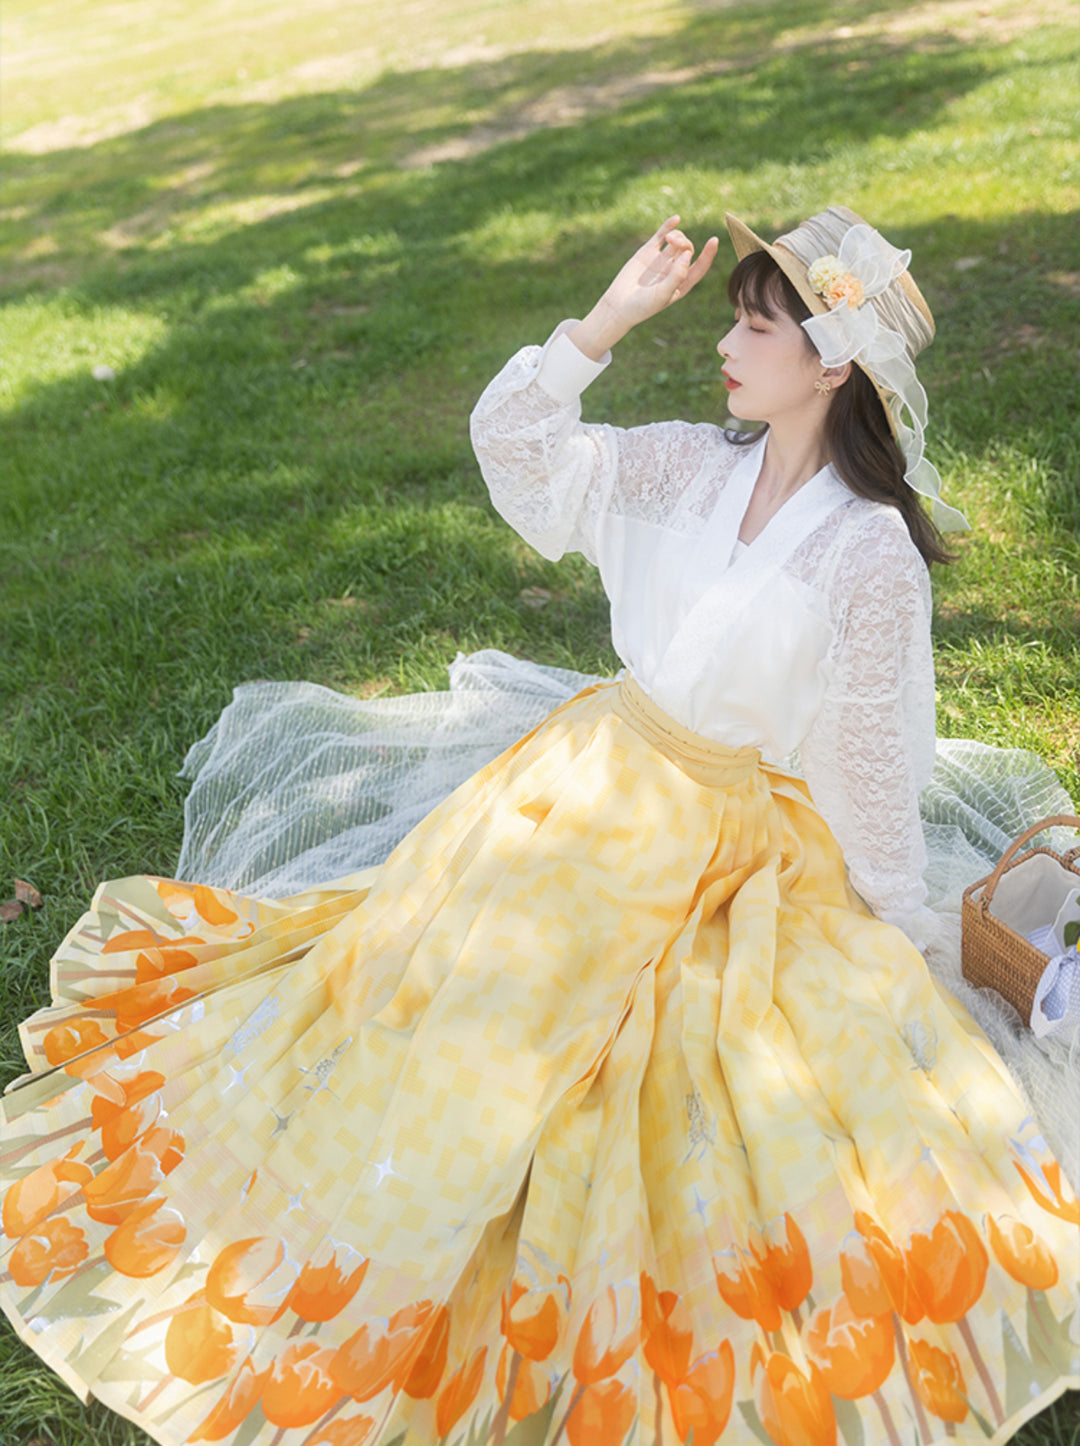 Chixia~Tulipfruit~Han Lolita Improved HanFu Horse-faced Skirt Dress eight-part skirt S 